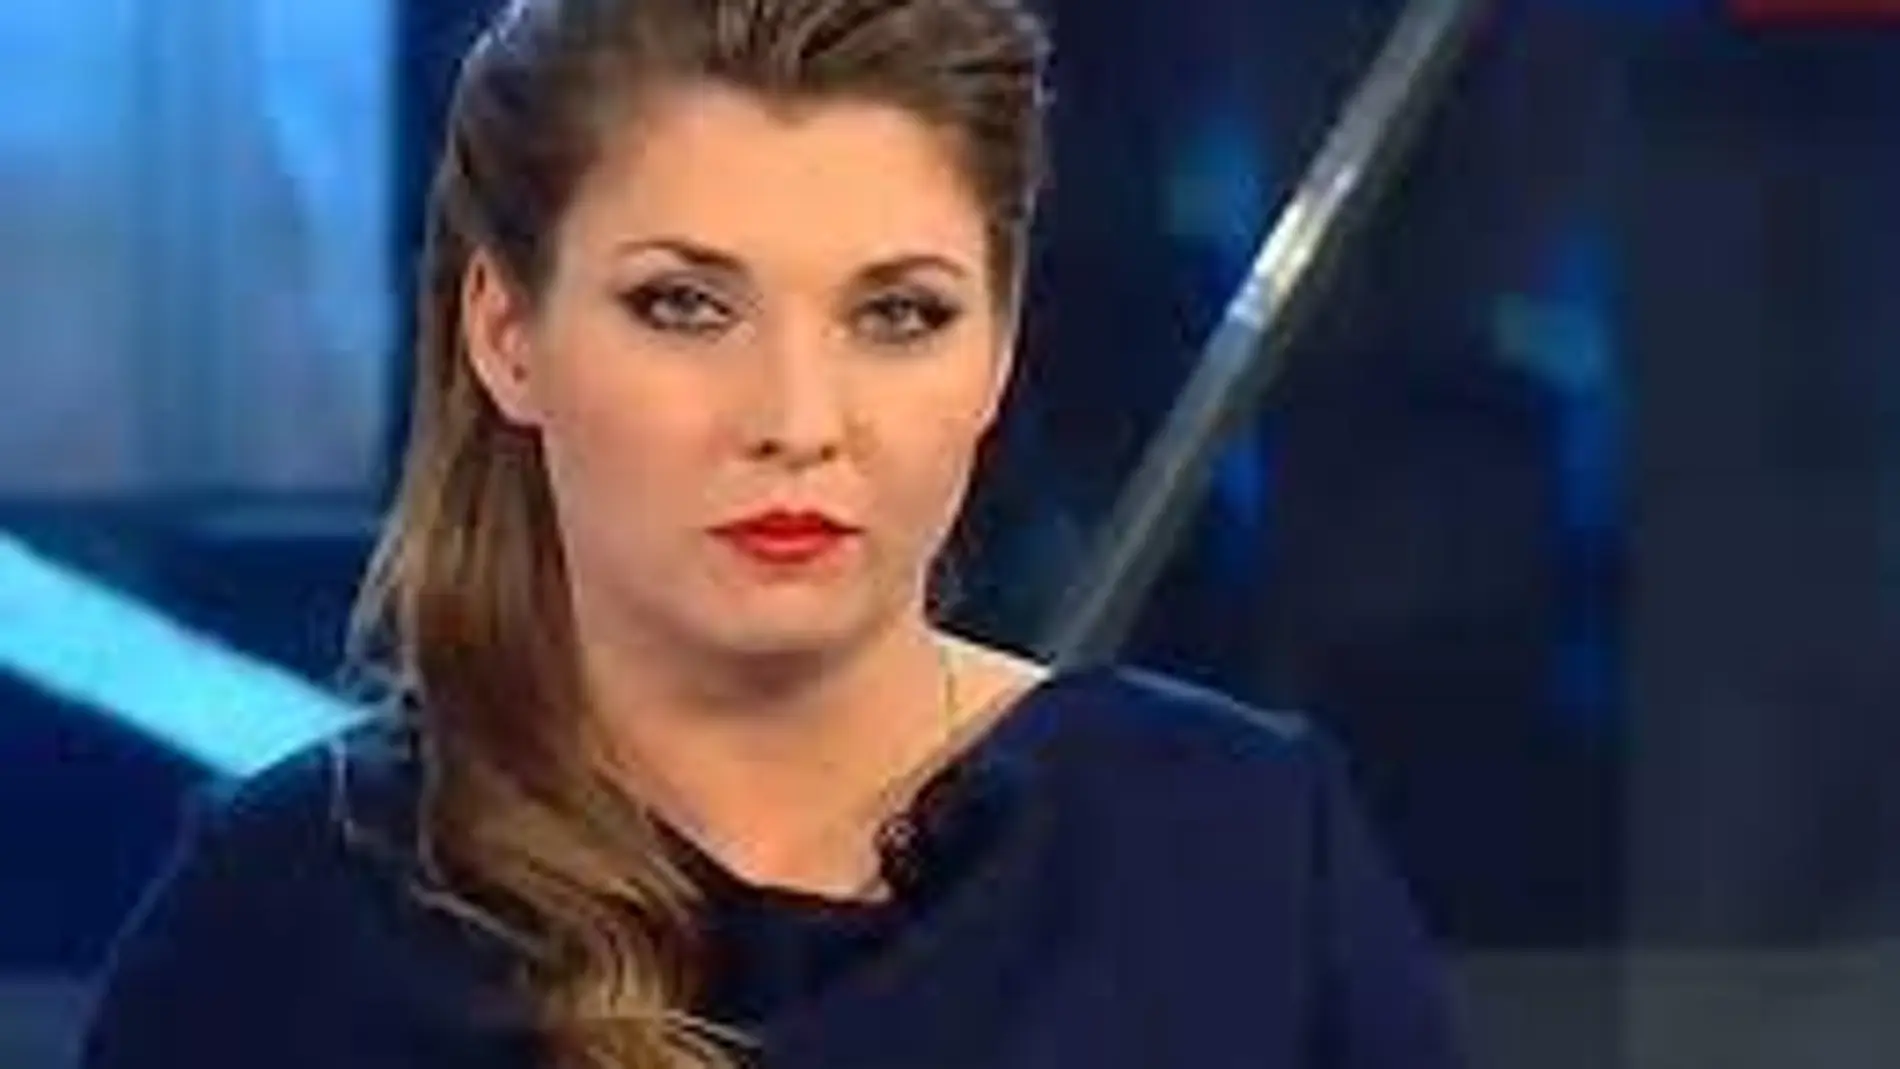 La presentadora de Russian One, Olga Skabeyeva